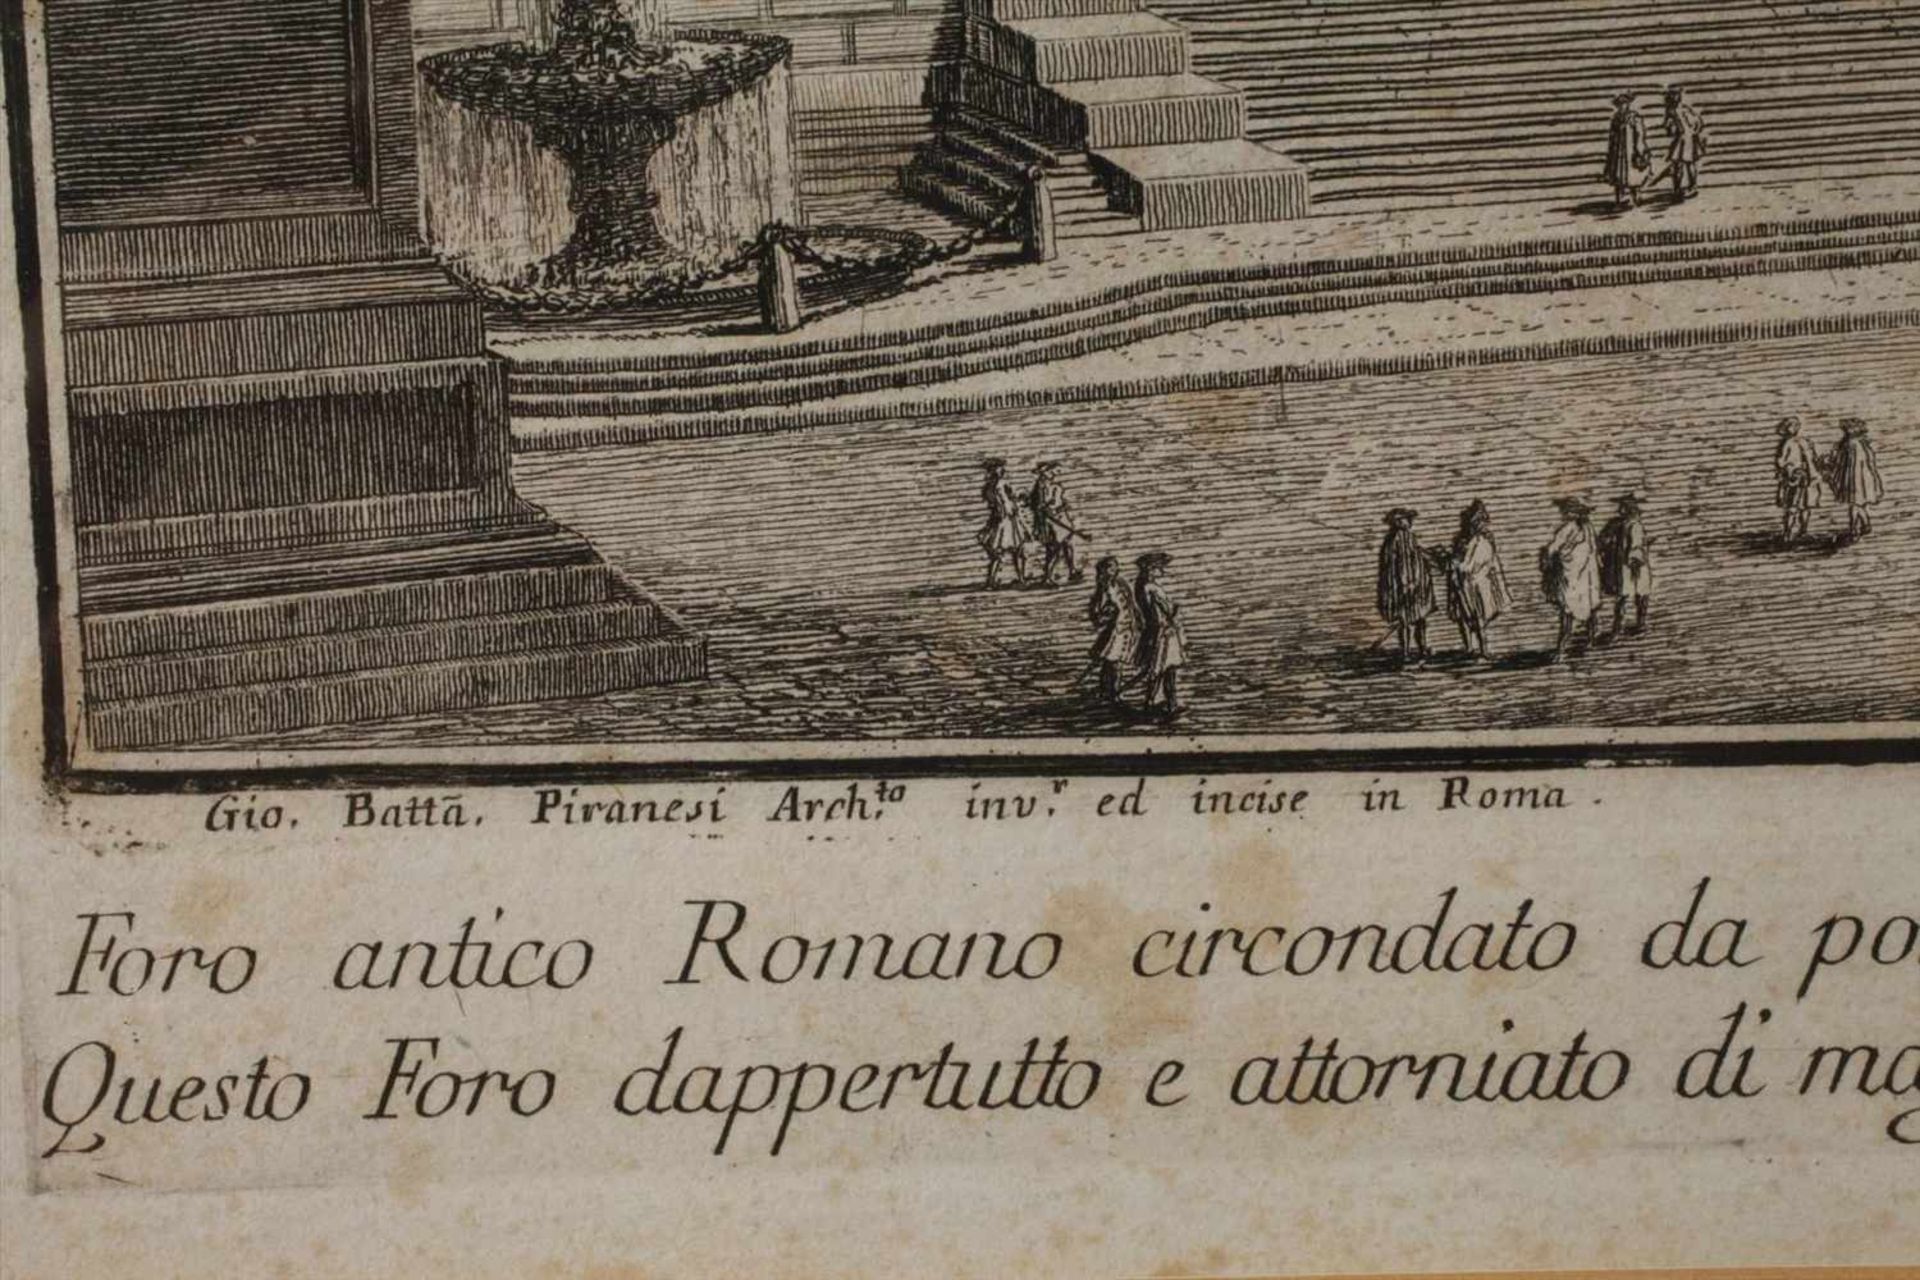 Giovanni Battista Piranesi, "Foro antico Romano"Blick auf einen prachtvollen, palastähnlichen Bau - Bild 2 aus 3